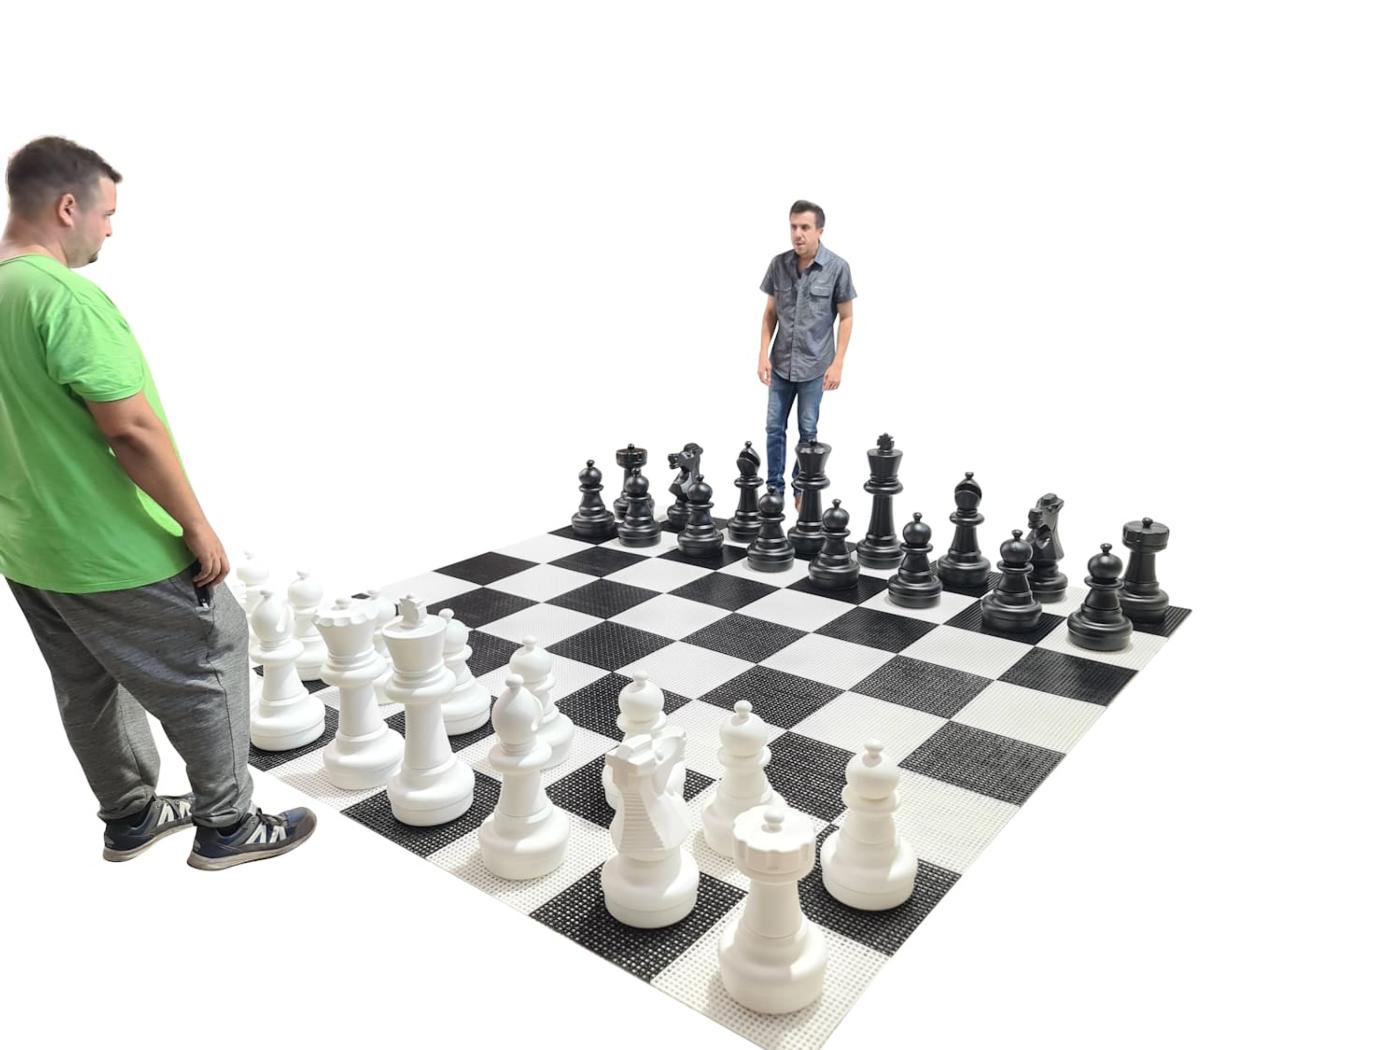 Jogo de xadrez gigante com tabuleiro rígido gigante incluido jogo completo com tabuleiro e jogadores